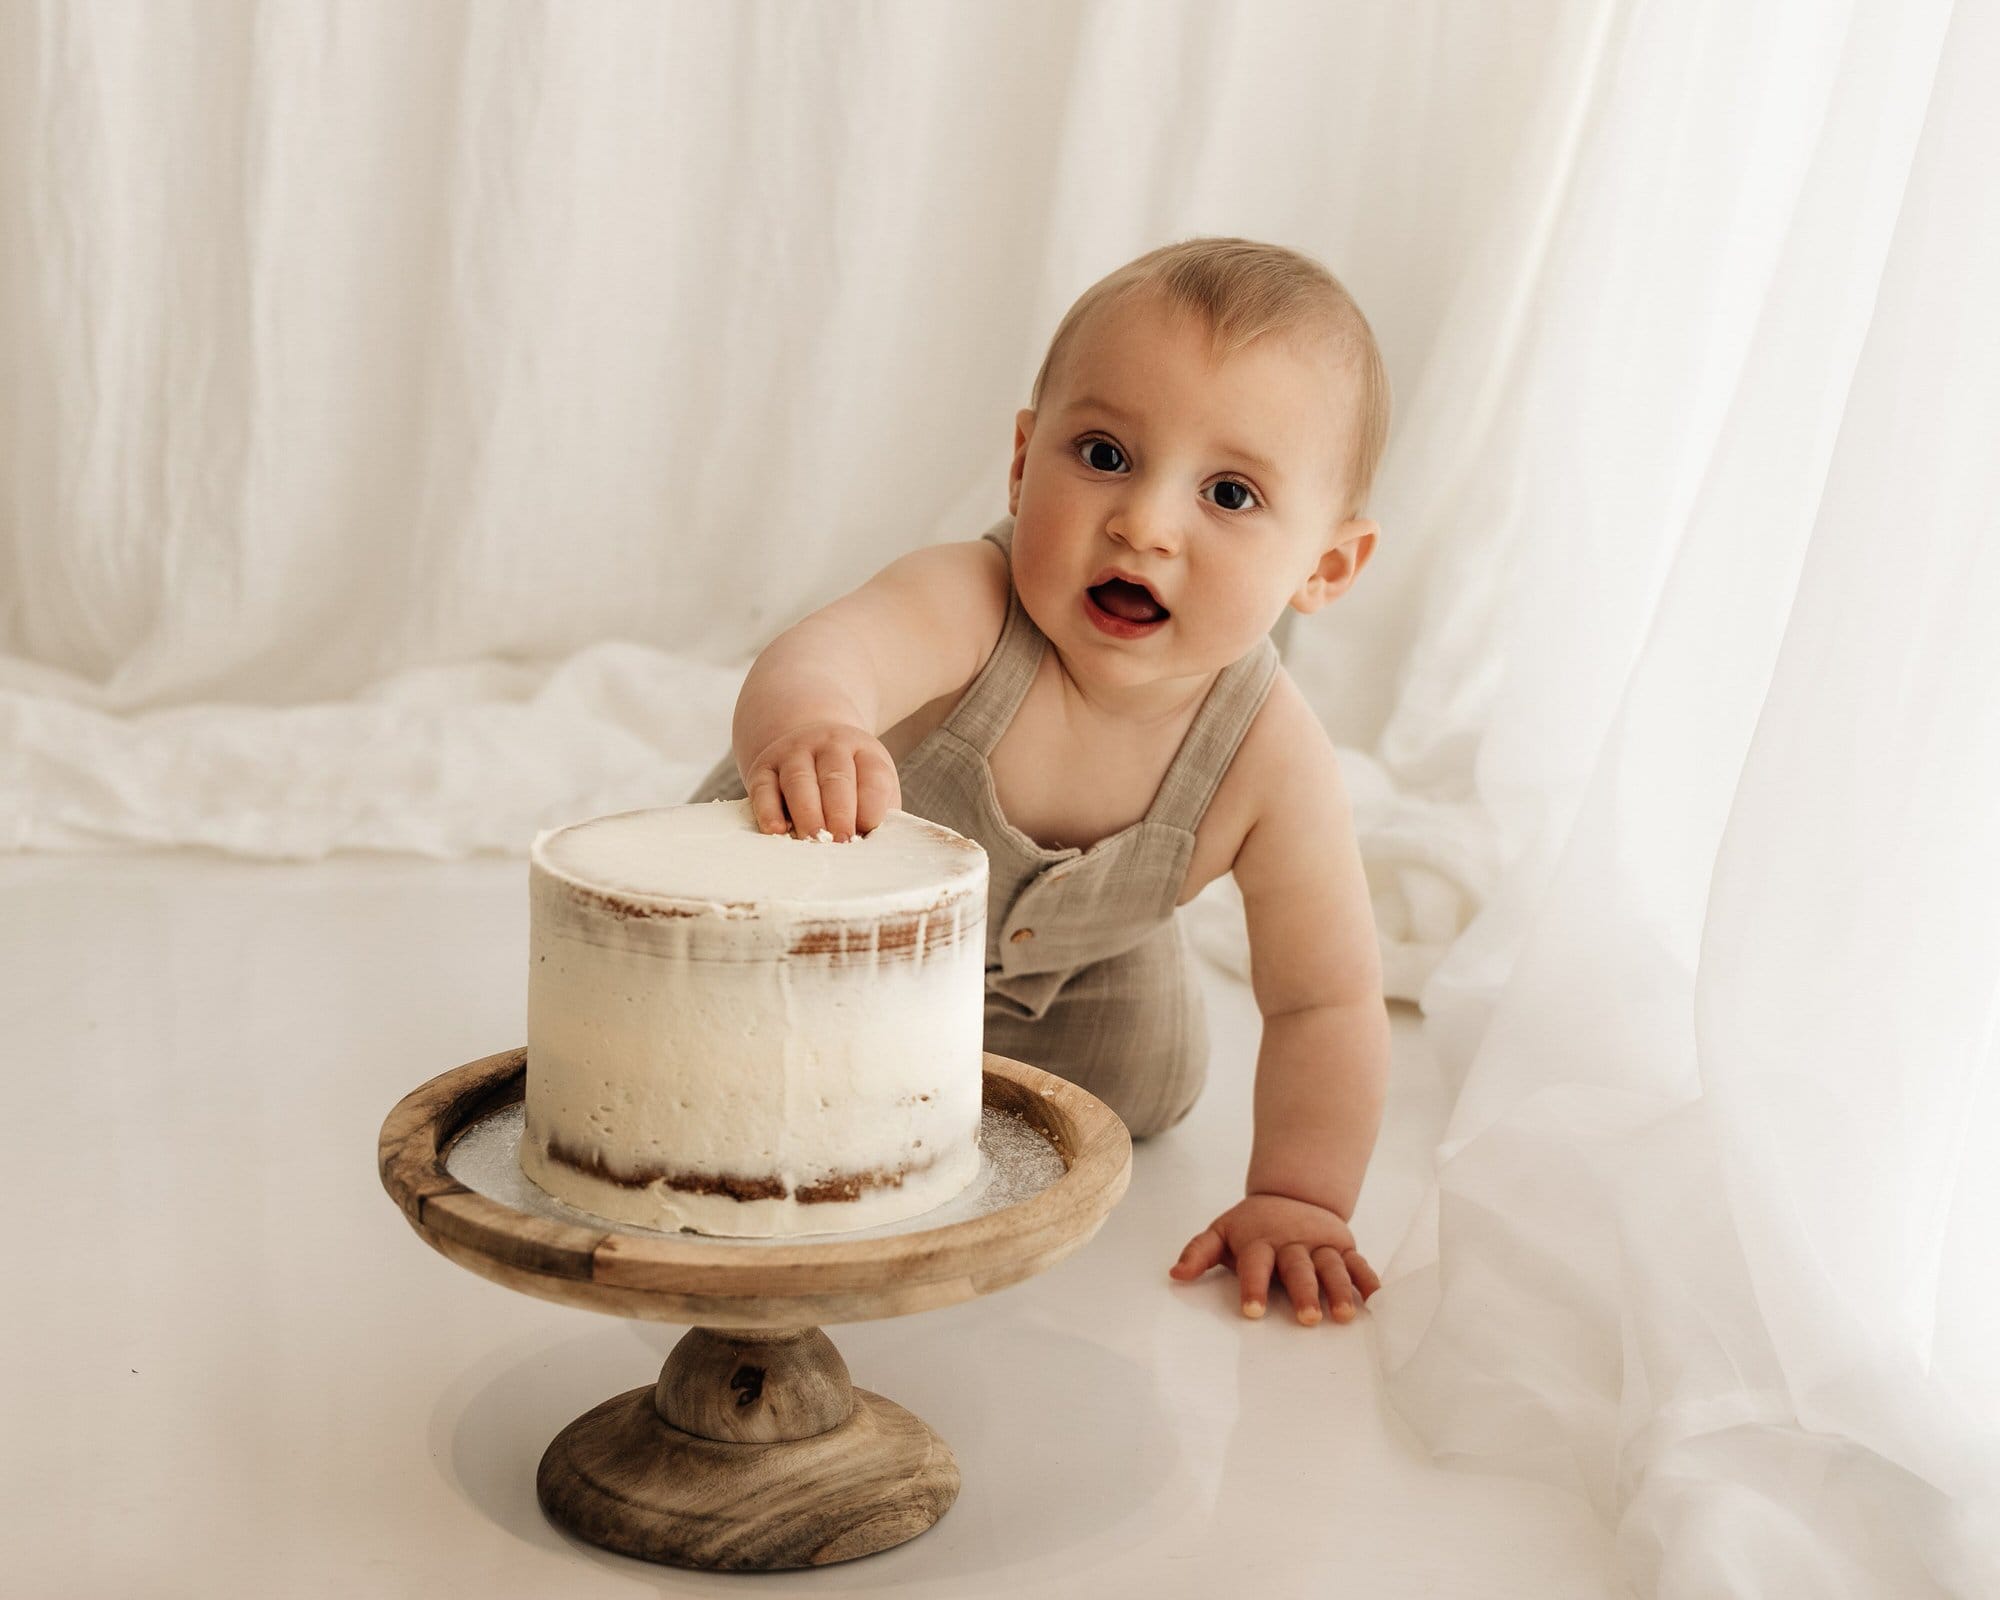 baby grabbing cake during a bradford cake smash photoshoot